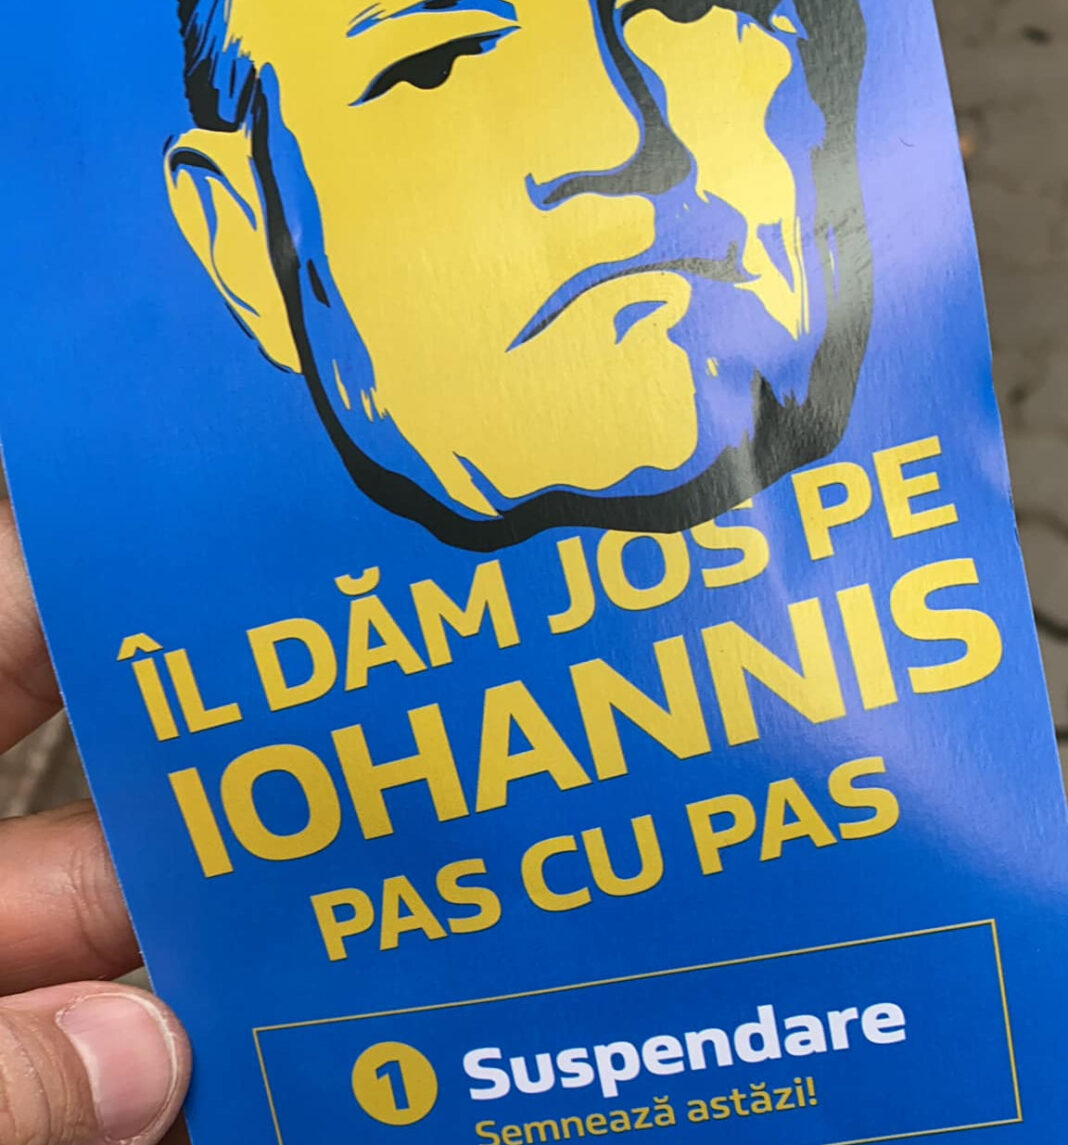 AUR dorește suspendarea lui Iohannis și a scos pliante prin care cere voturi